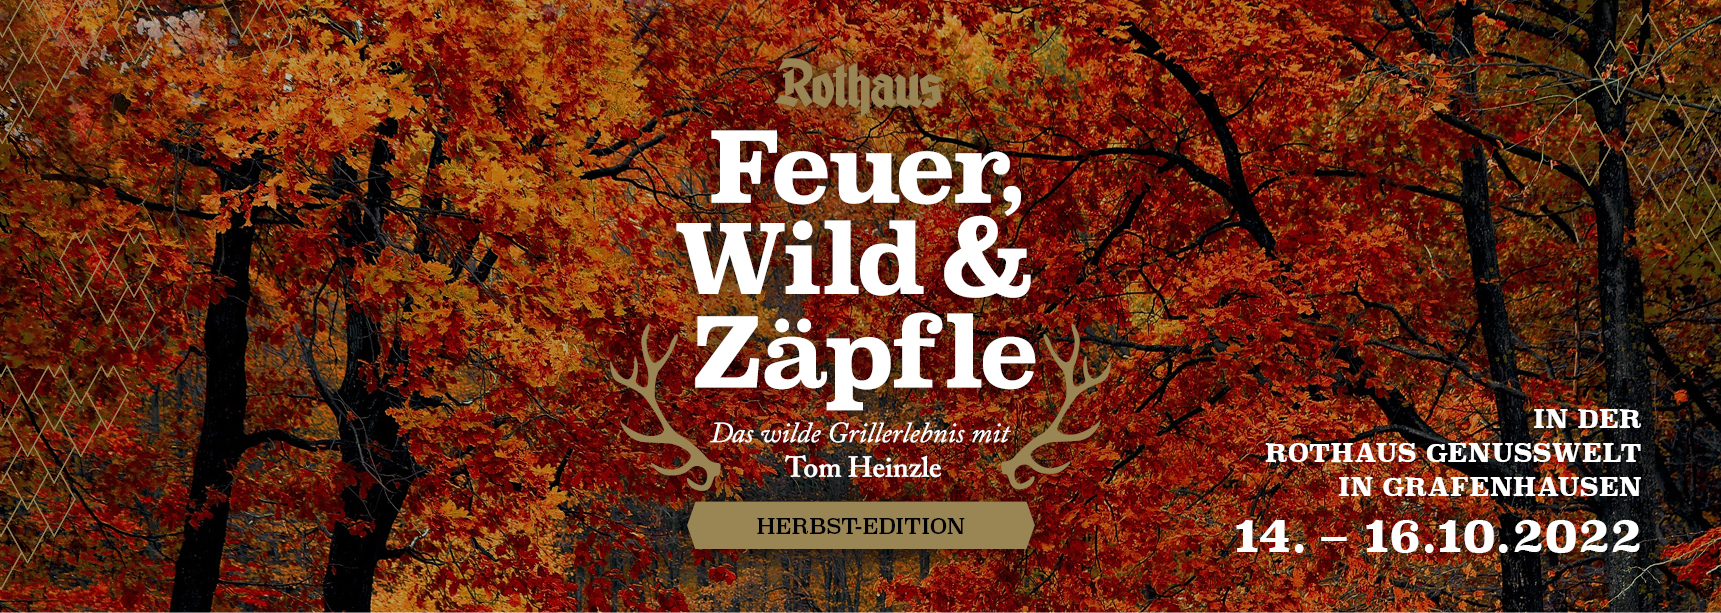 Feuer, Wild und Zäpfle: Herbst-Edition